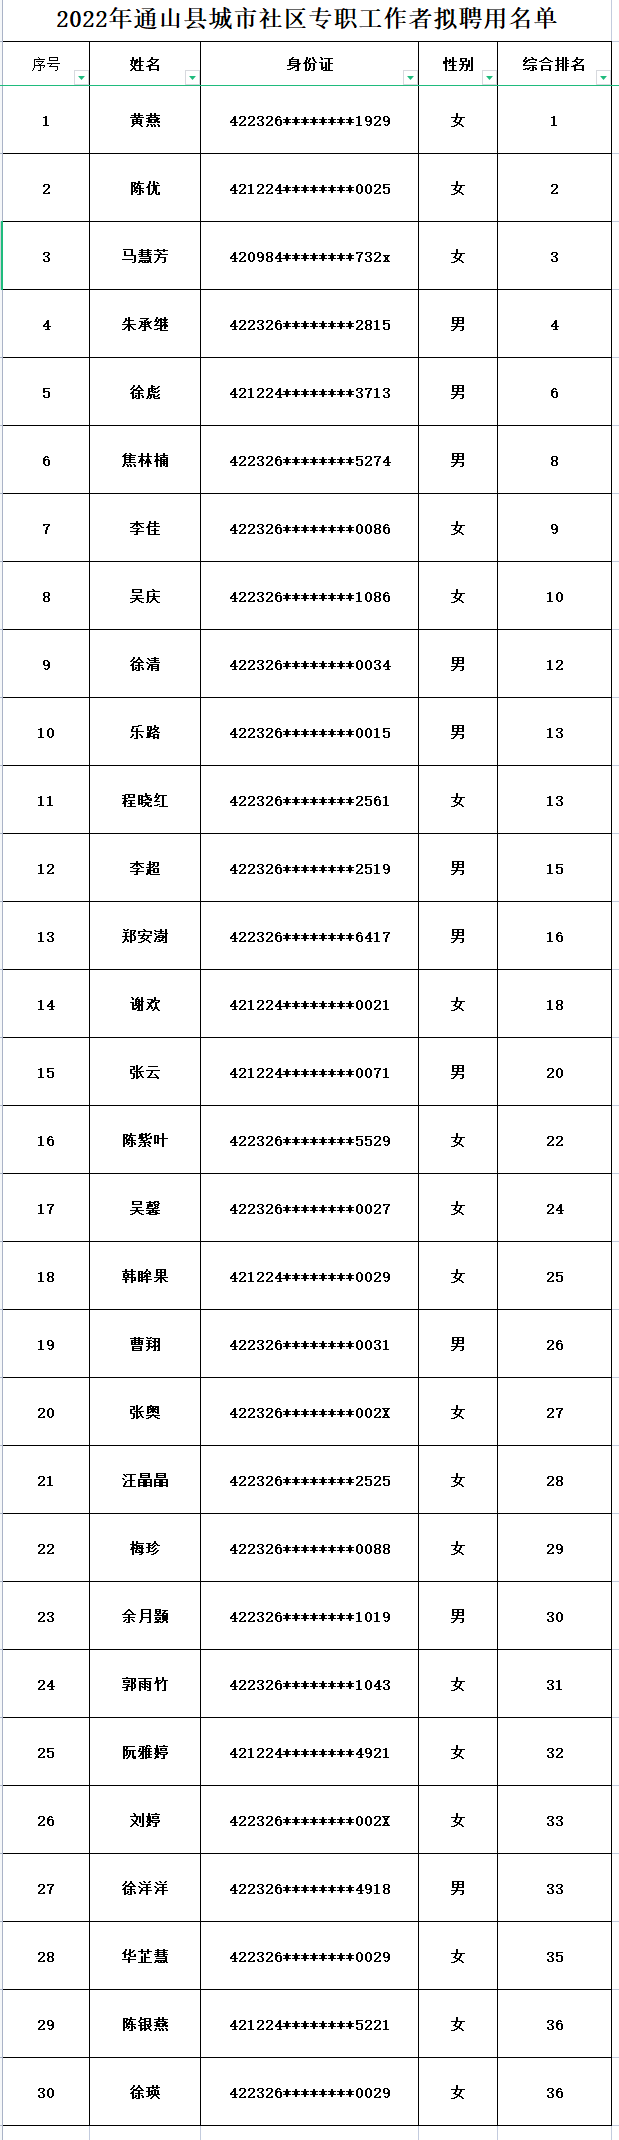 2022年咸宁通山县城市社区专职工作者拟聘用名单公示